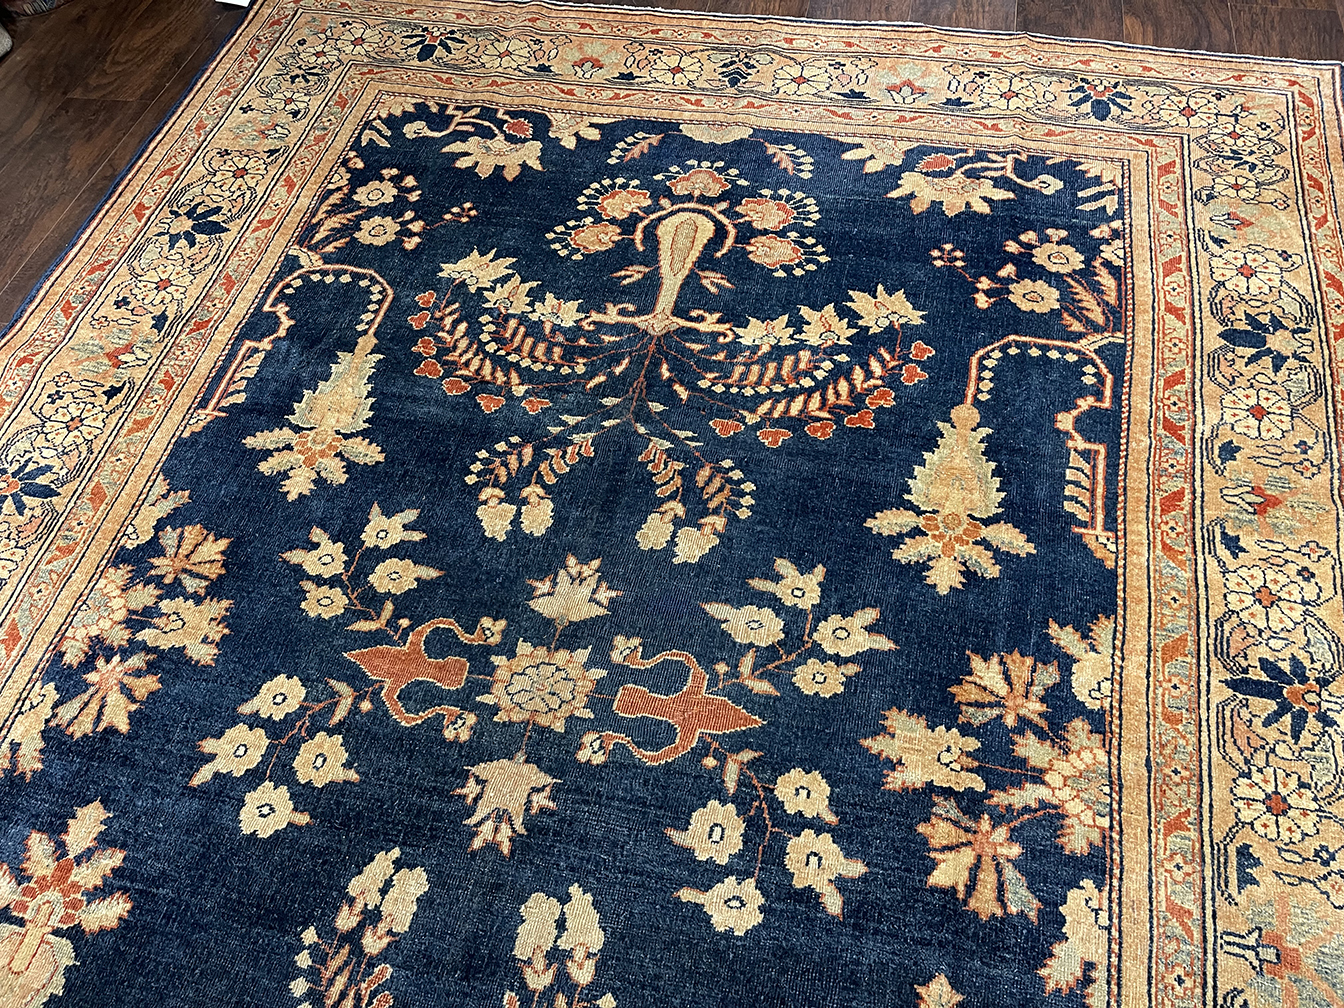 Antique mahal Carpet - # 56324